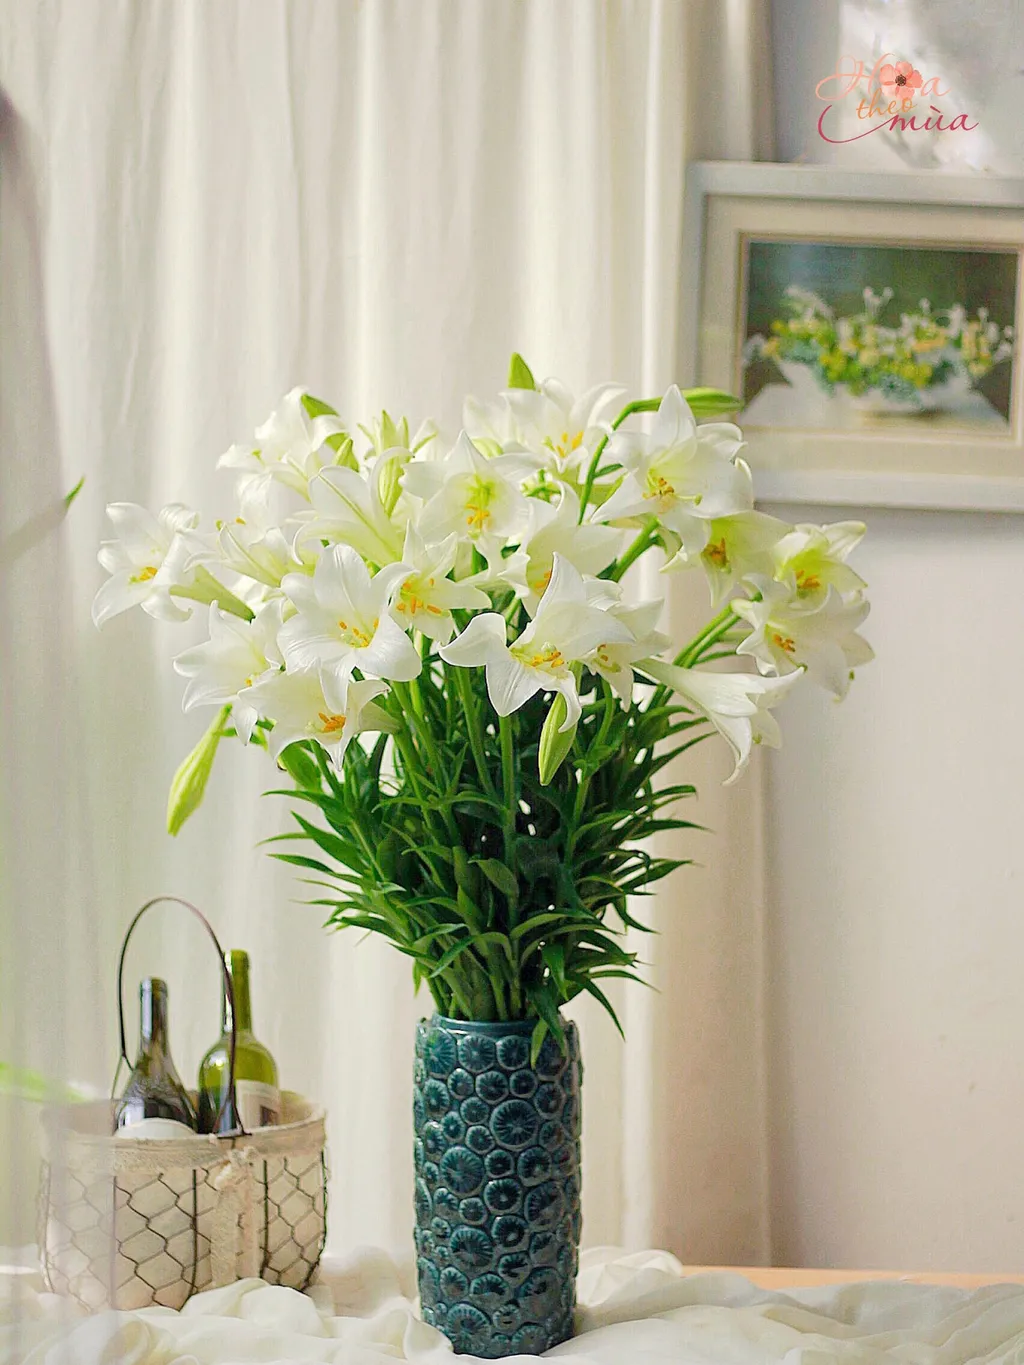 Bình hoa loa kèn là cách phổ biến để trang trí bàn làm việc, bàn ăn hoặc không gian sống trong nhà